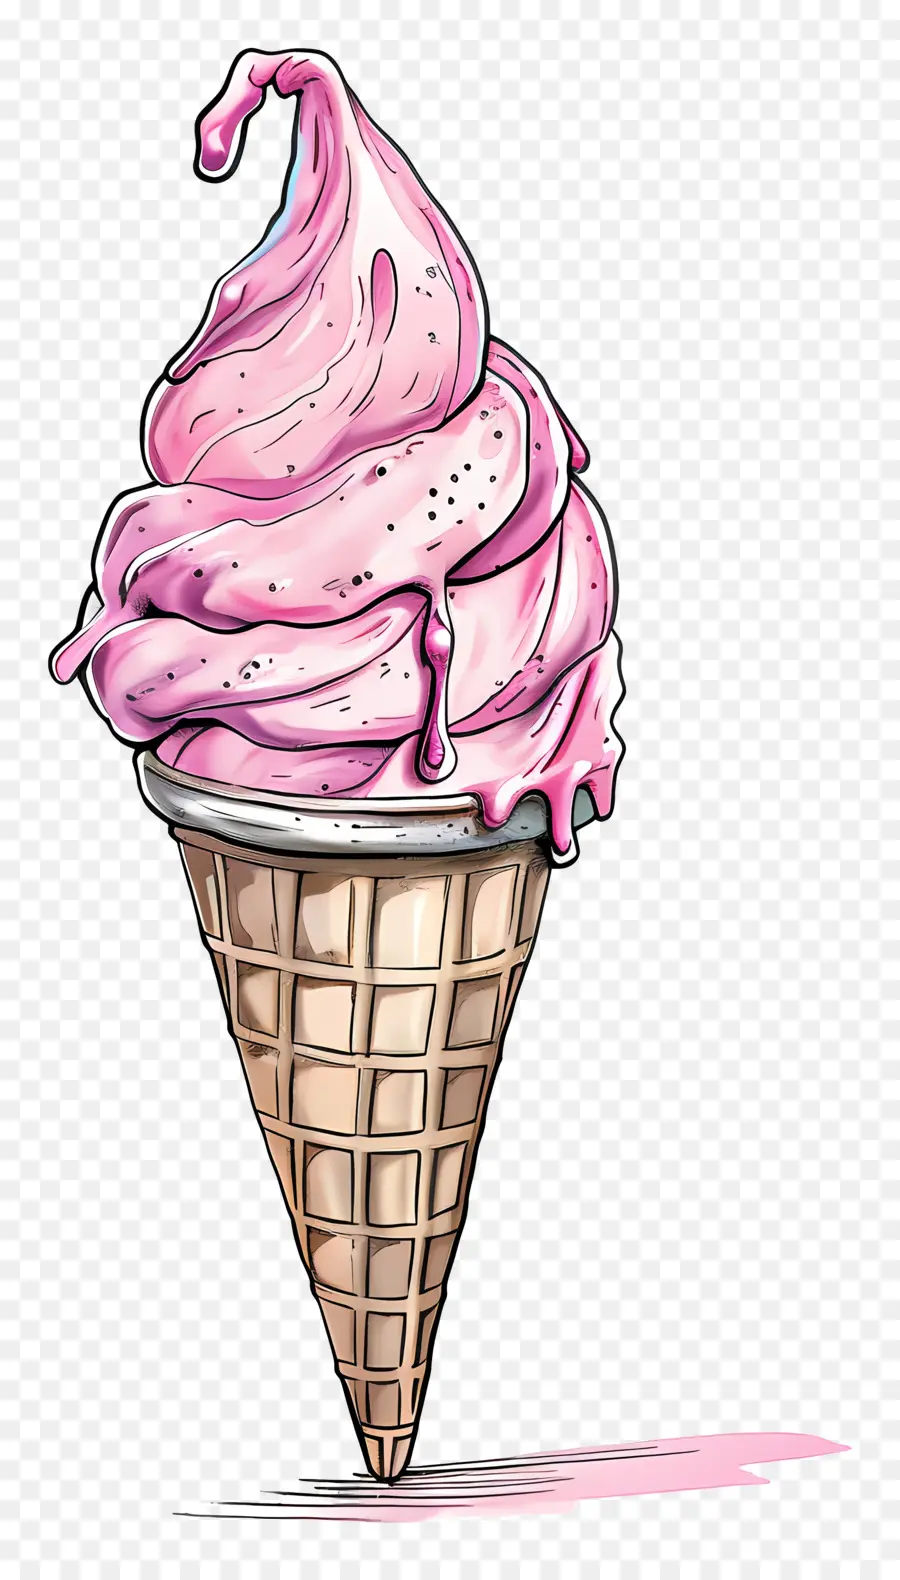 cone ice cream pink ice cream ice cream cone swirled texture vanilla sauce